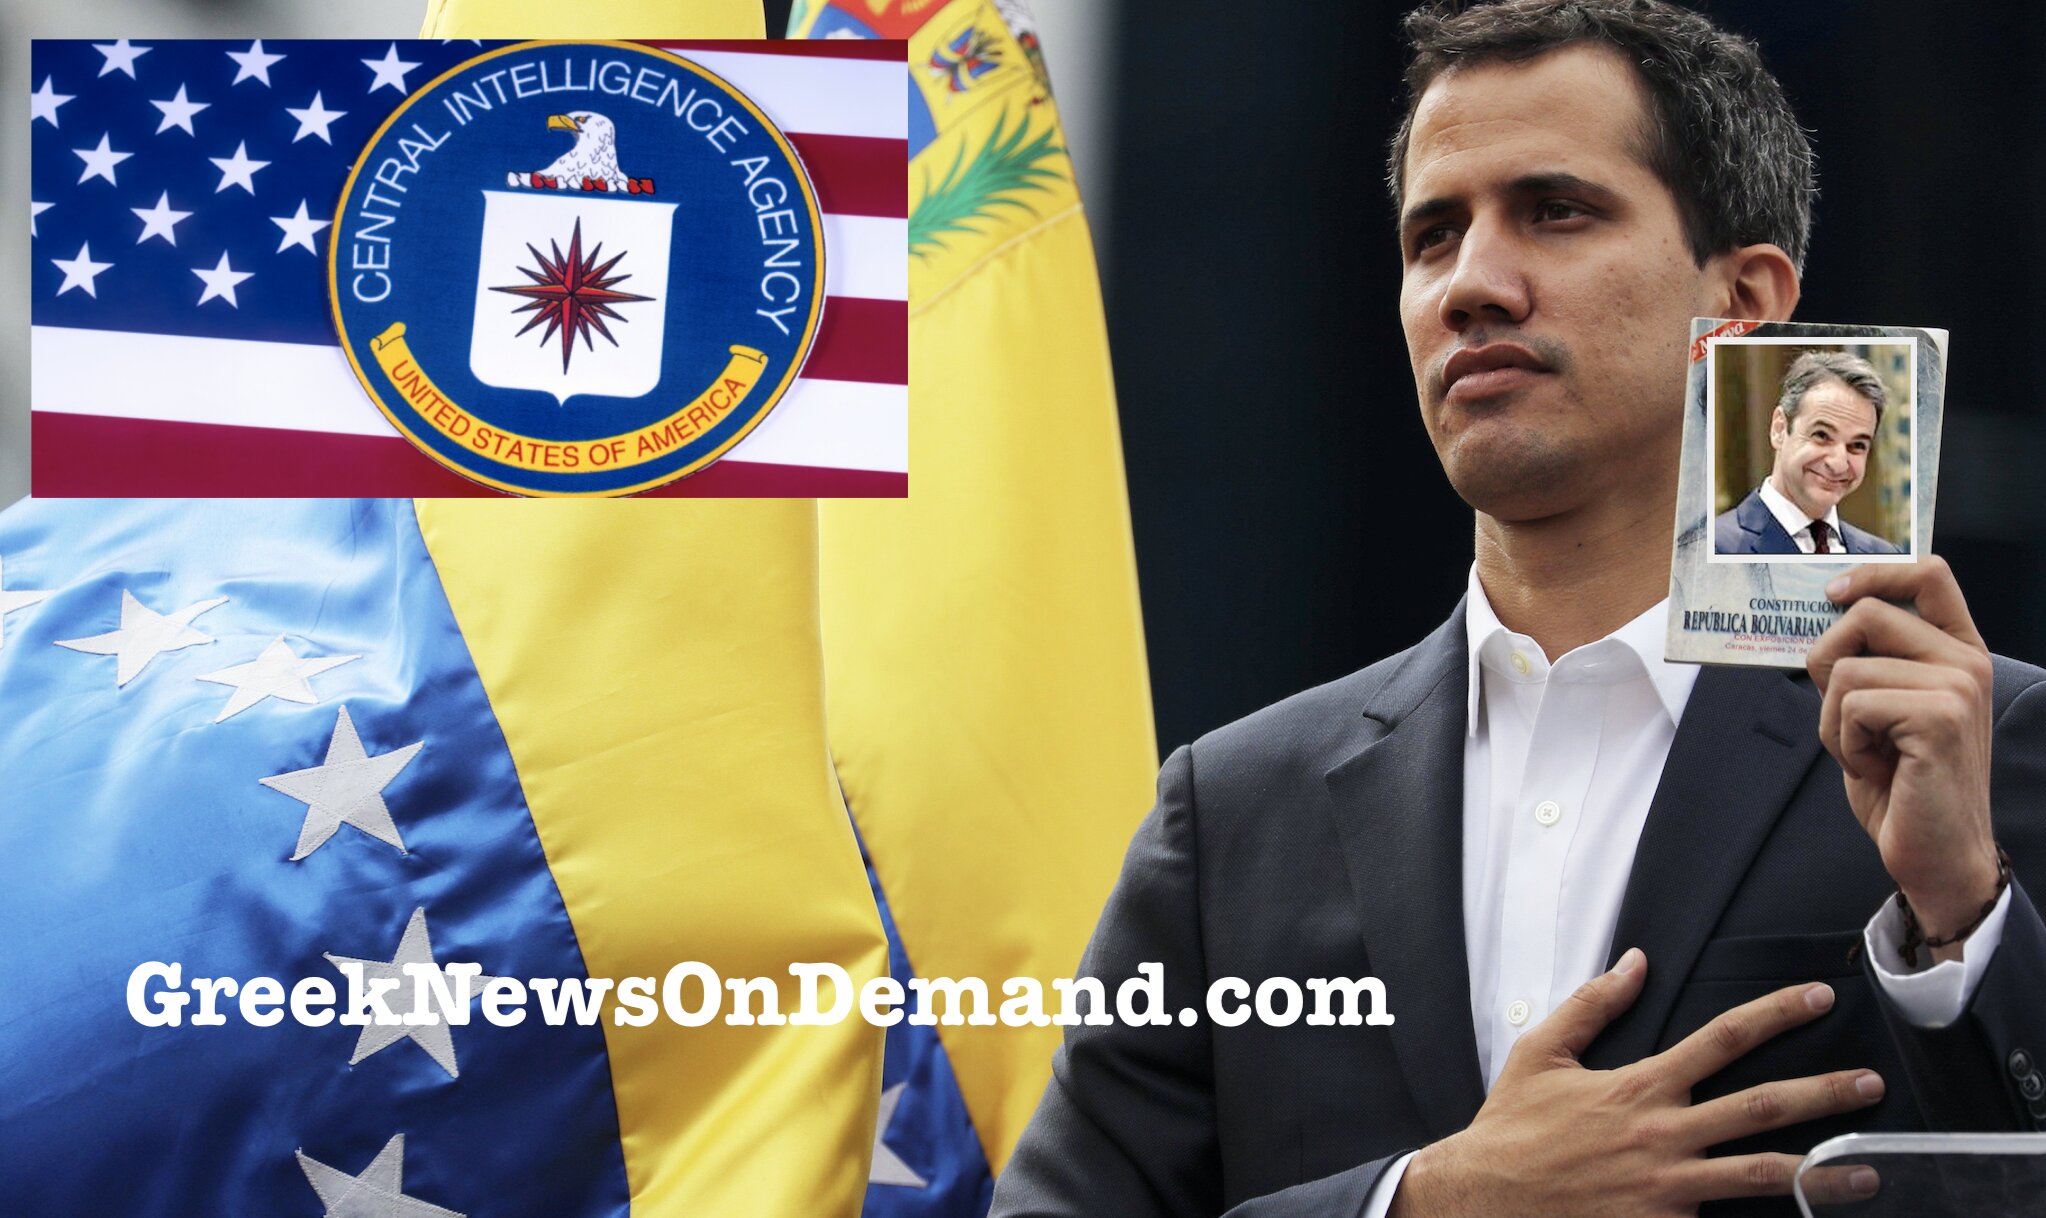 Η κυβέρνηση Μητσοτάκη αναγνωρίζει τον ΠΡΑΚΤΟΡΑ της CIA Χουάν Γκουαϊδό ως “πρόεδρο της Βενεζουέλας”!!!